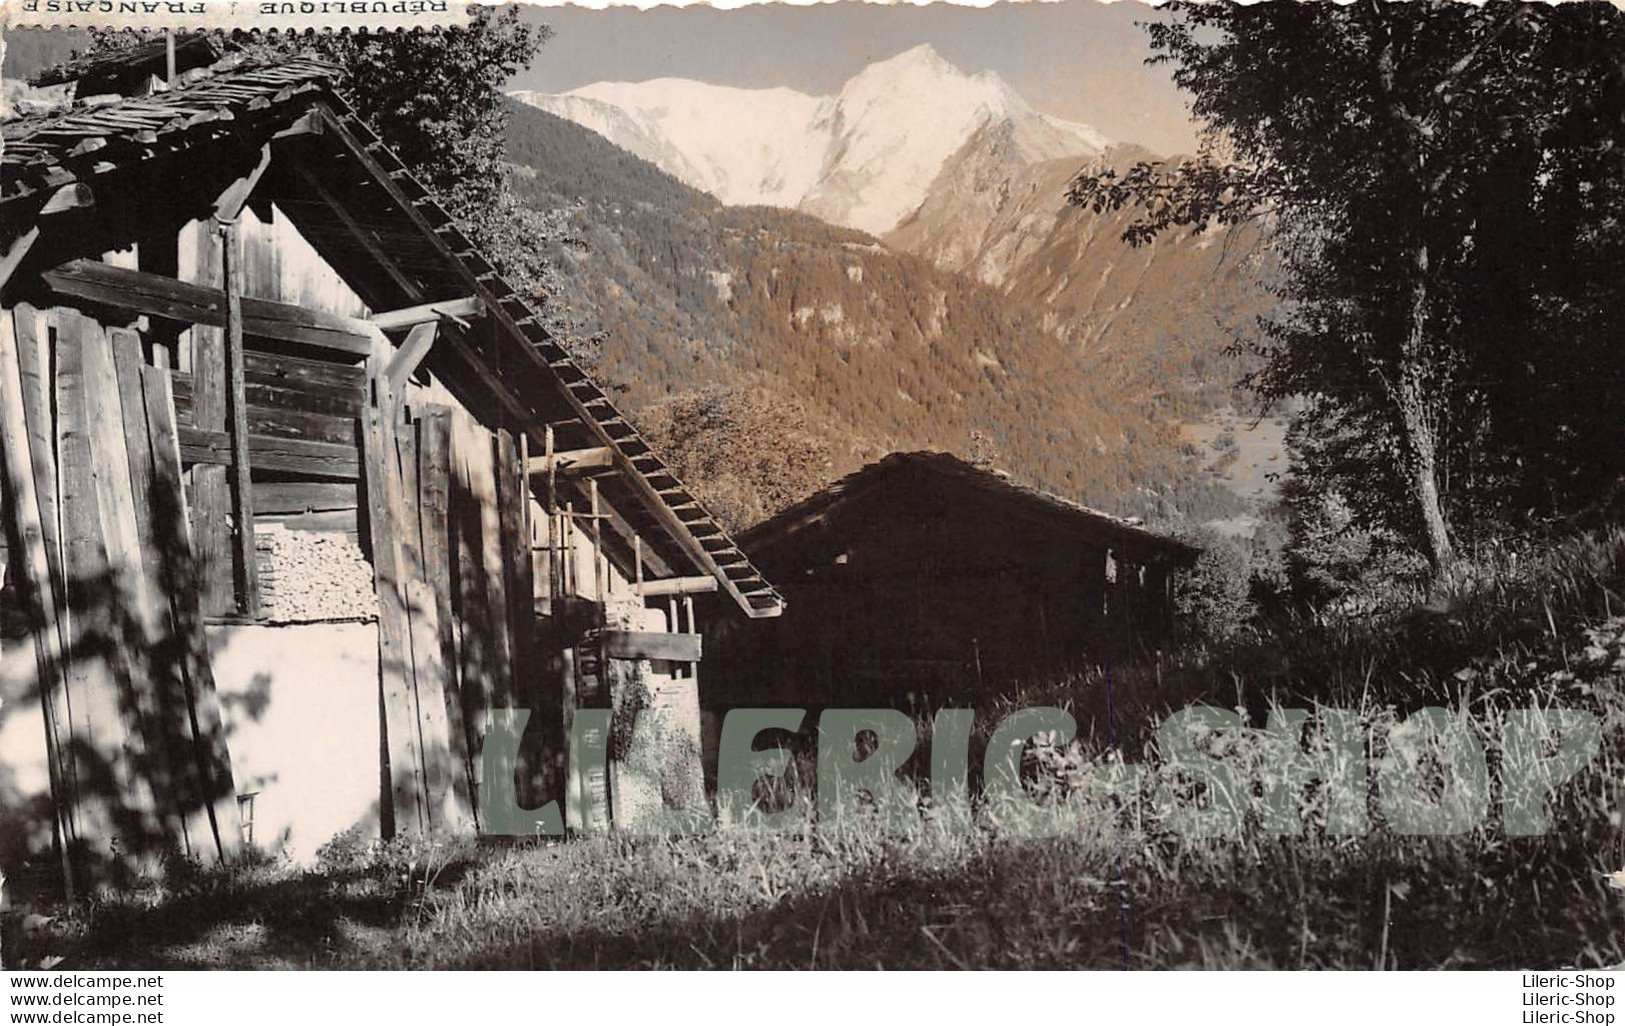 SAINT-GERVAIS (74) PHOTO FUMEX 1955 Format Carte Postale (140x89) Chalet Savoyard Et Chaîne Du Mont-Blanc - Saint-Gervais-les-Bains